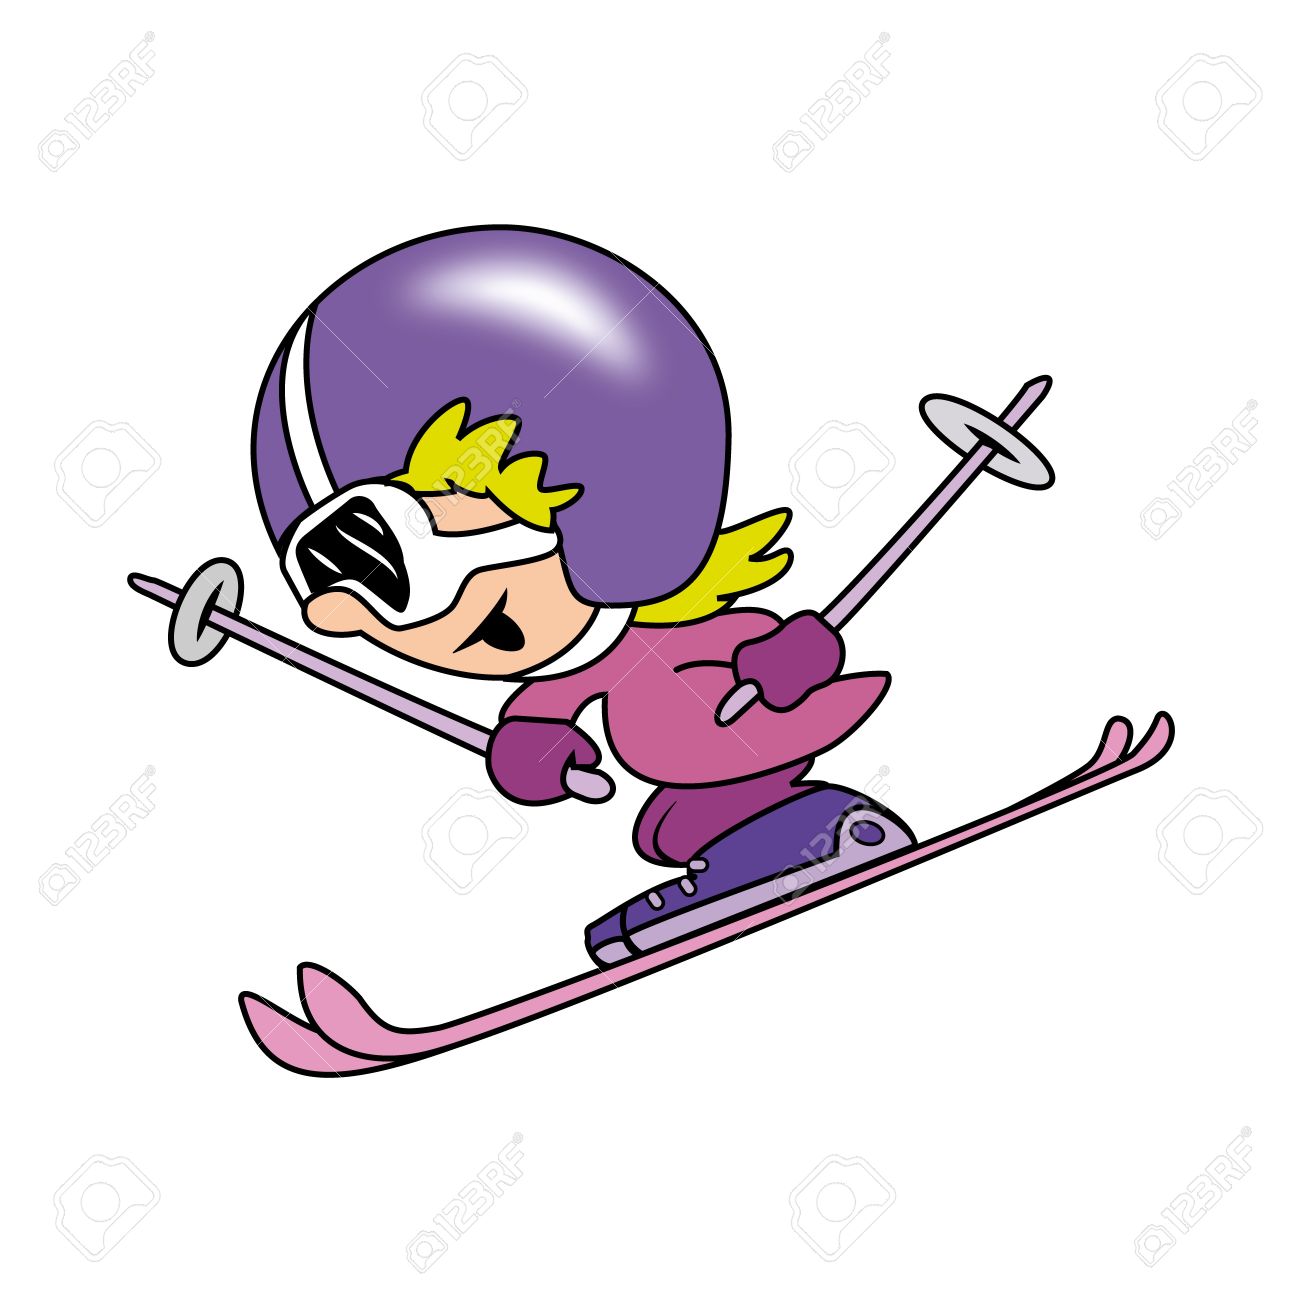 13325078-little-girl-skiing